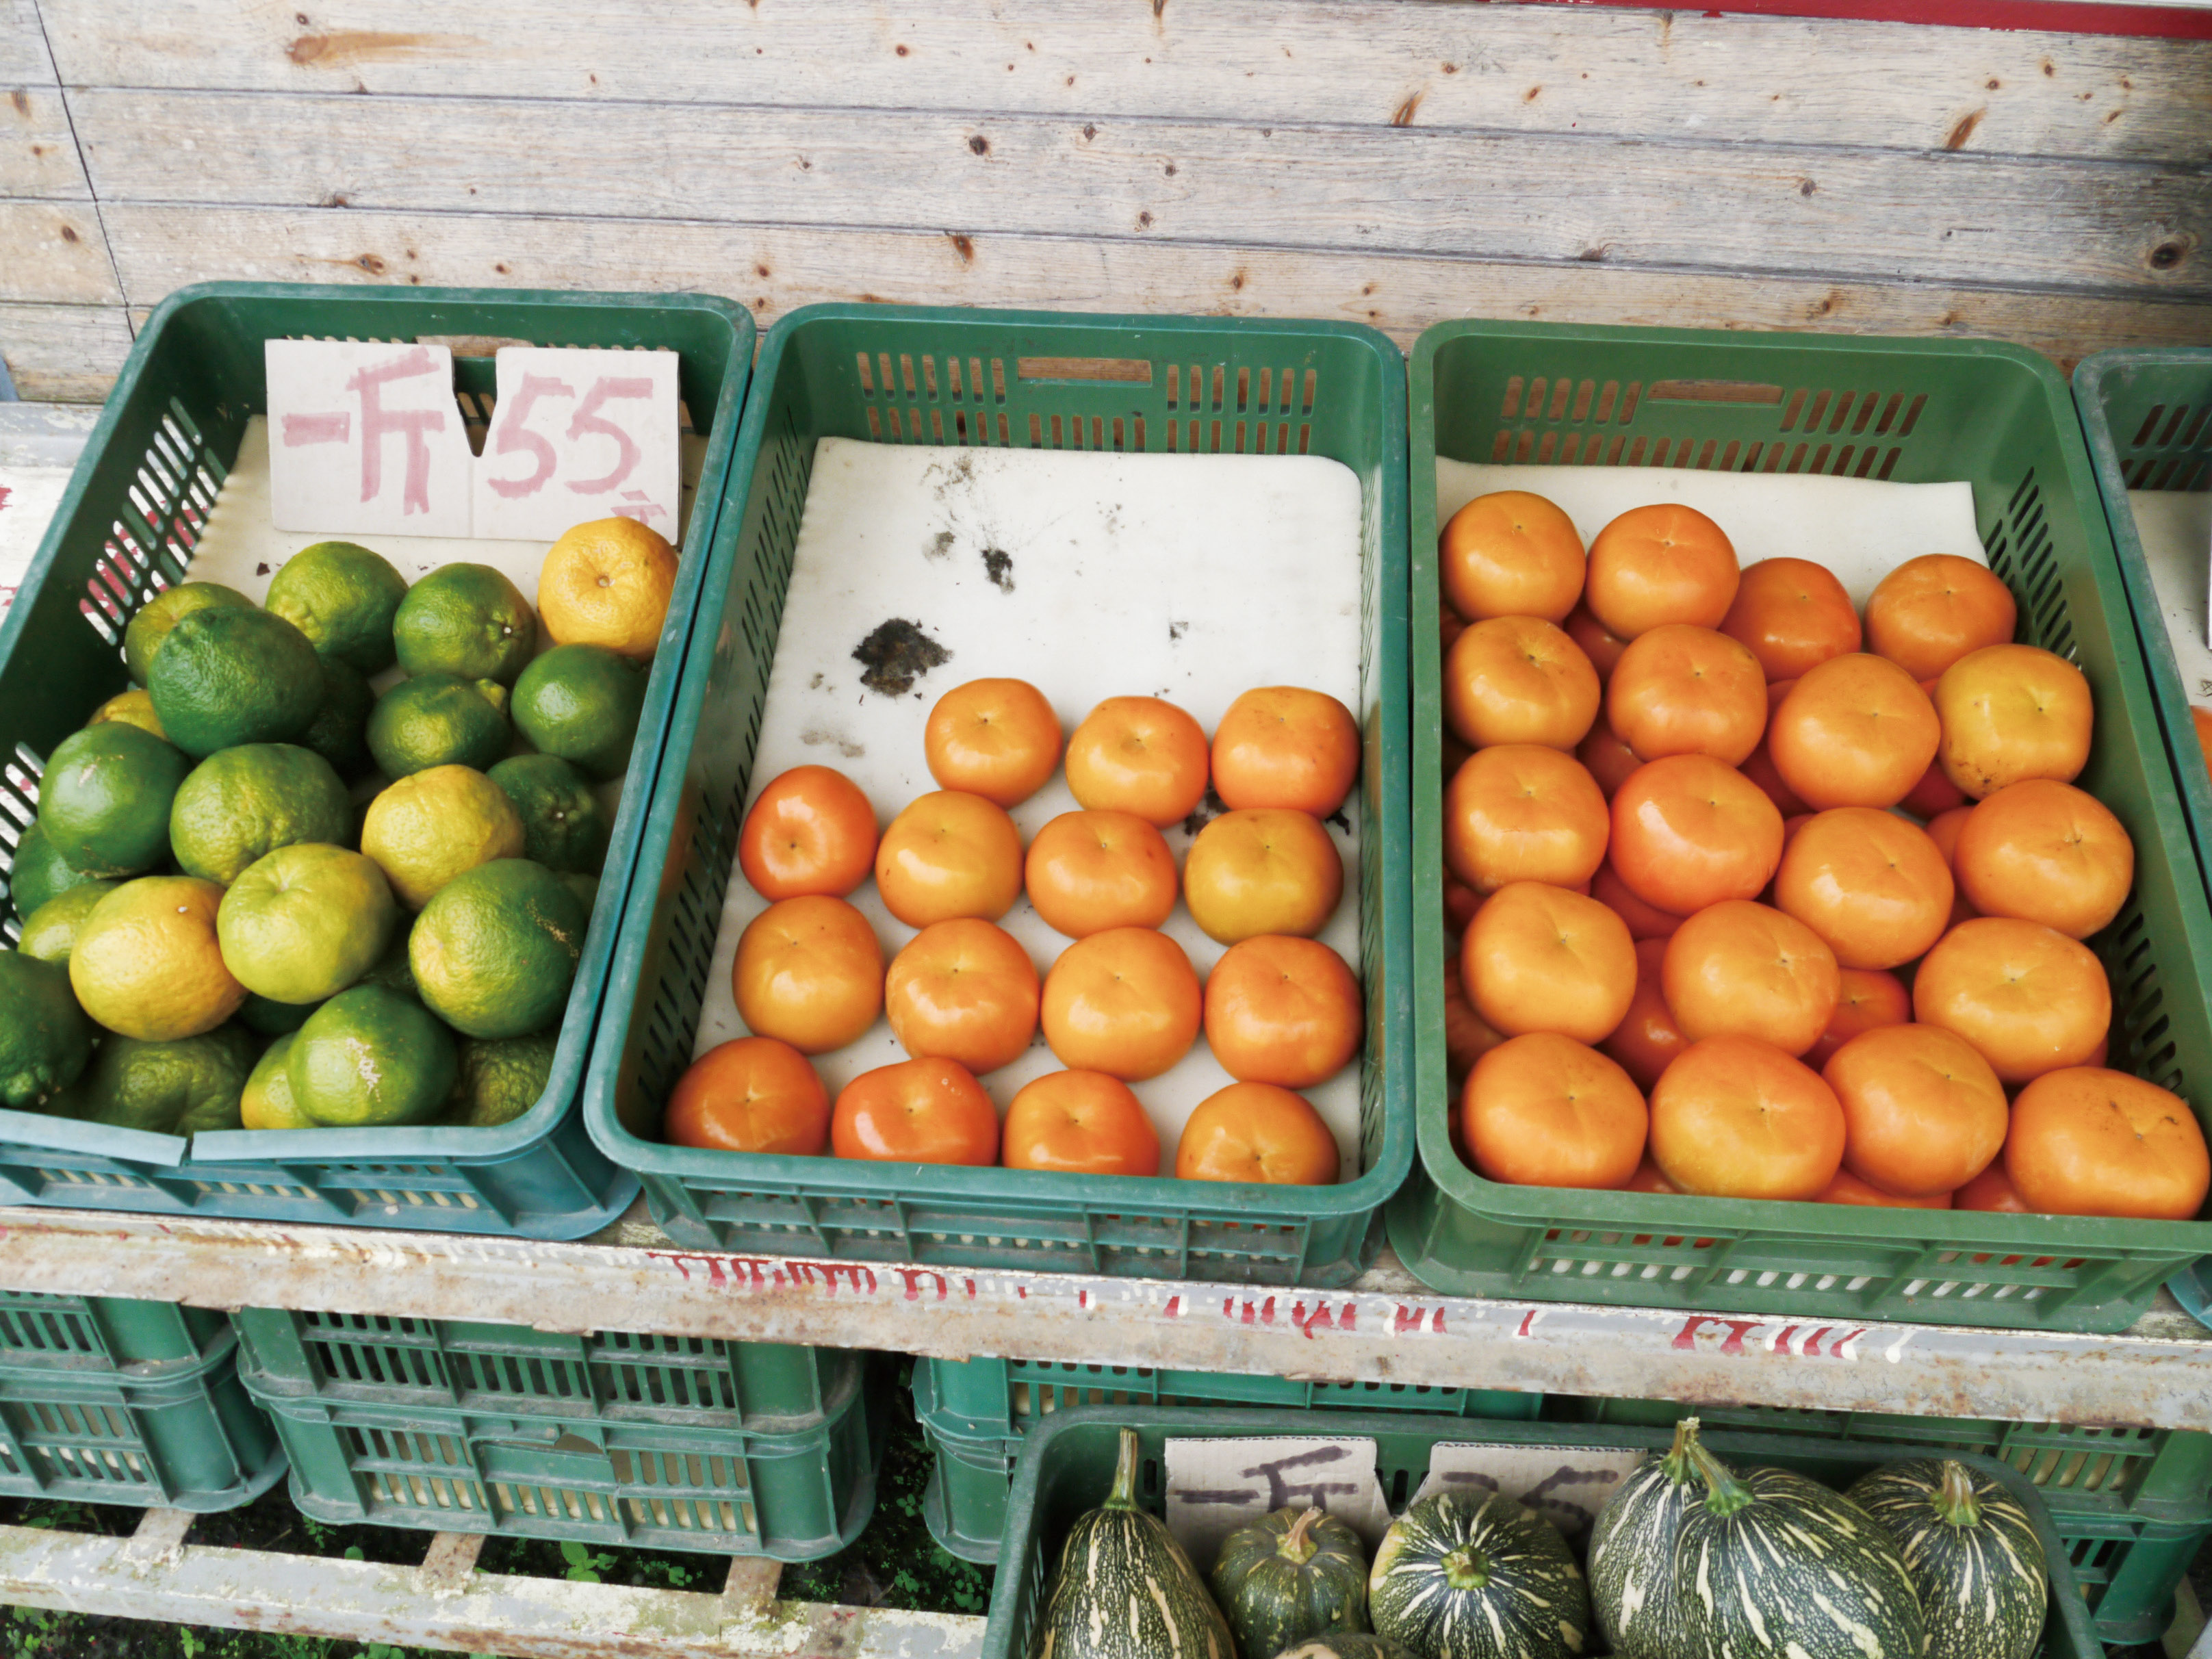 部落商店販售甜柿、橘子等當地當令的農產品(雪霸國家公園管理處提供)
